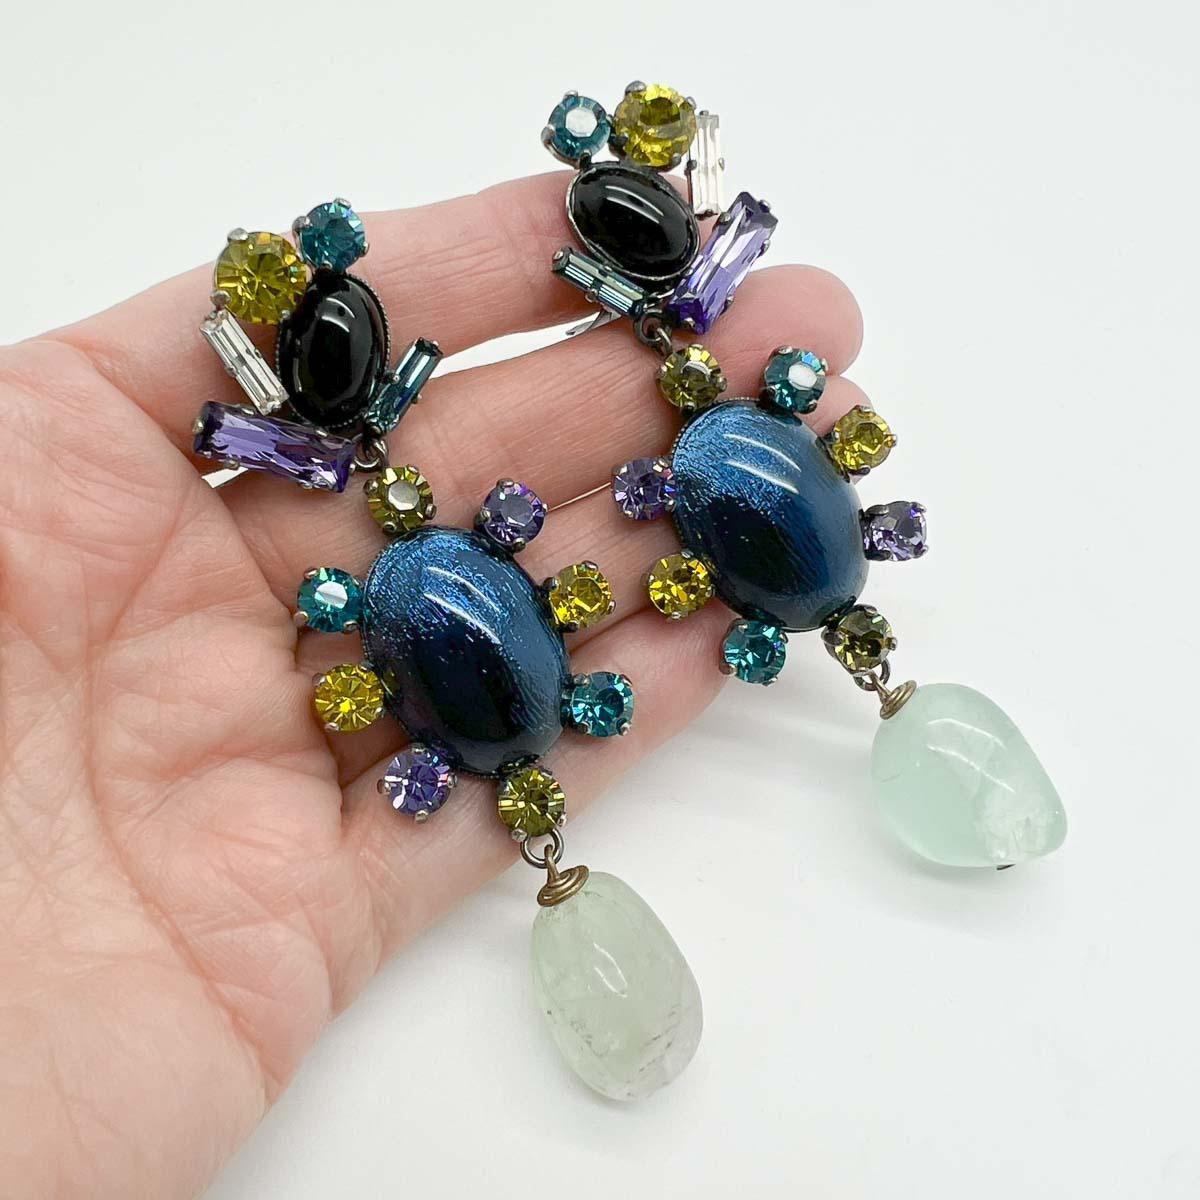 Unglaublich Vintage Philippe Ferrandis Ohrringe. Eine erhabene Mischung aus blauen und grünen Farben in einem langen und dramatischen Ohrring. Exquisite Liebe zum Detail mit veredelten Steinen, Natursteinen und Glaskristallen in ausgefallenen